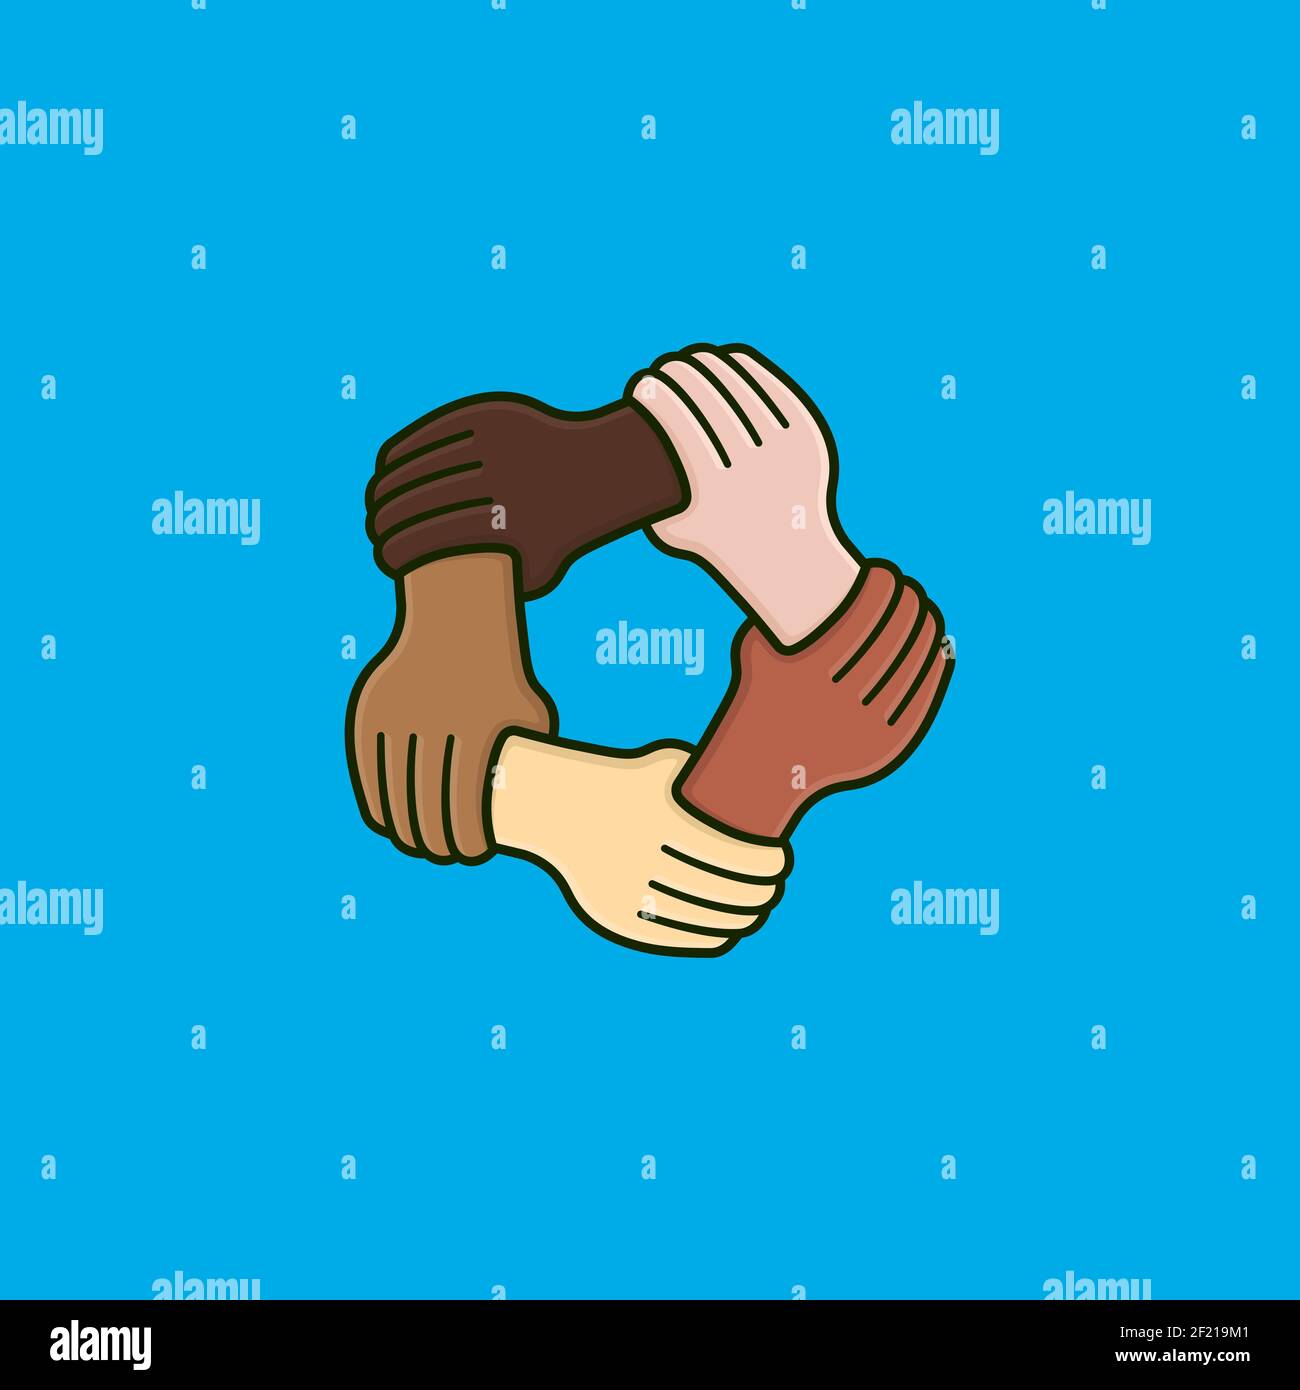 Fünf Hände mit unterschiedlichen Hautfarben halten sich gegenseitig am Handgelenk vektordarstellung für den multikulturellen Diversity Day am 18. Oktober Stock Vektor